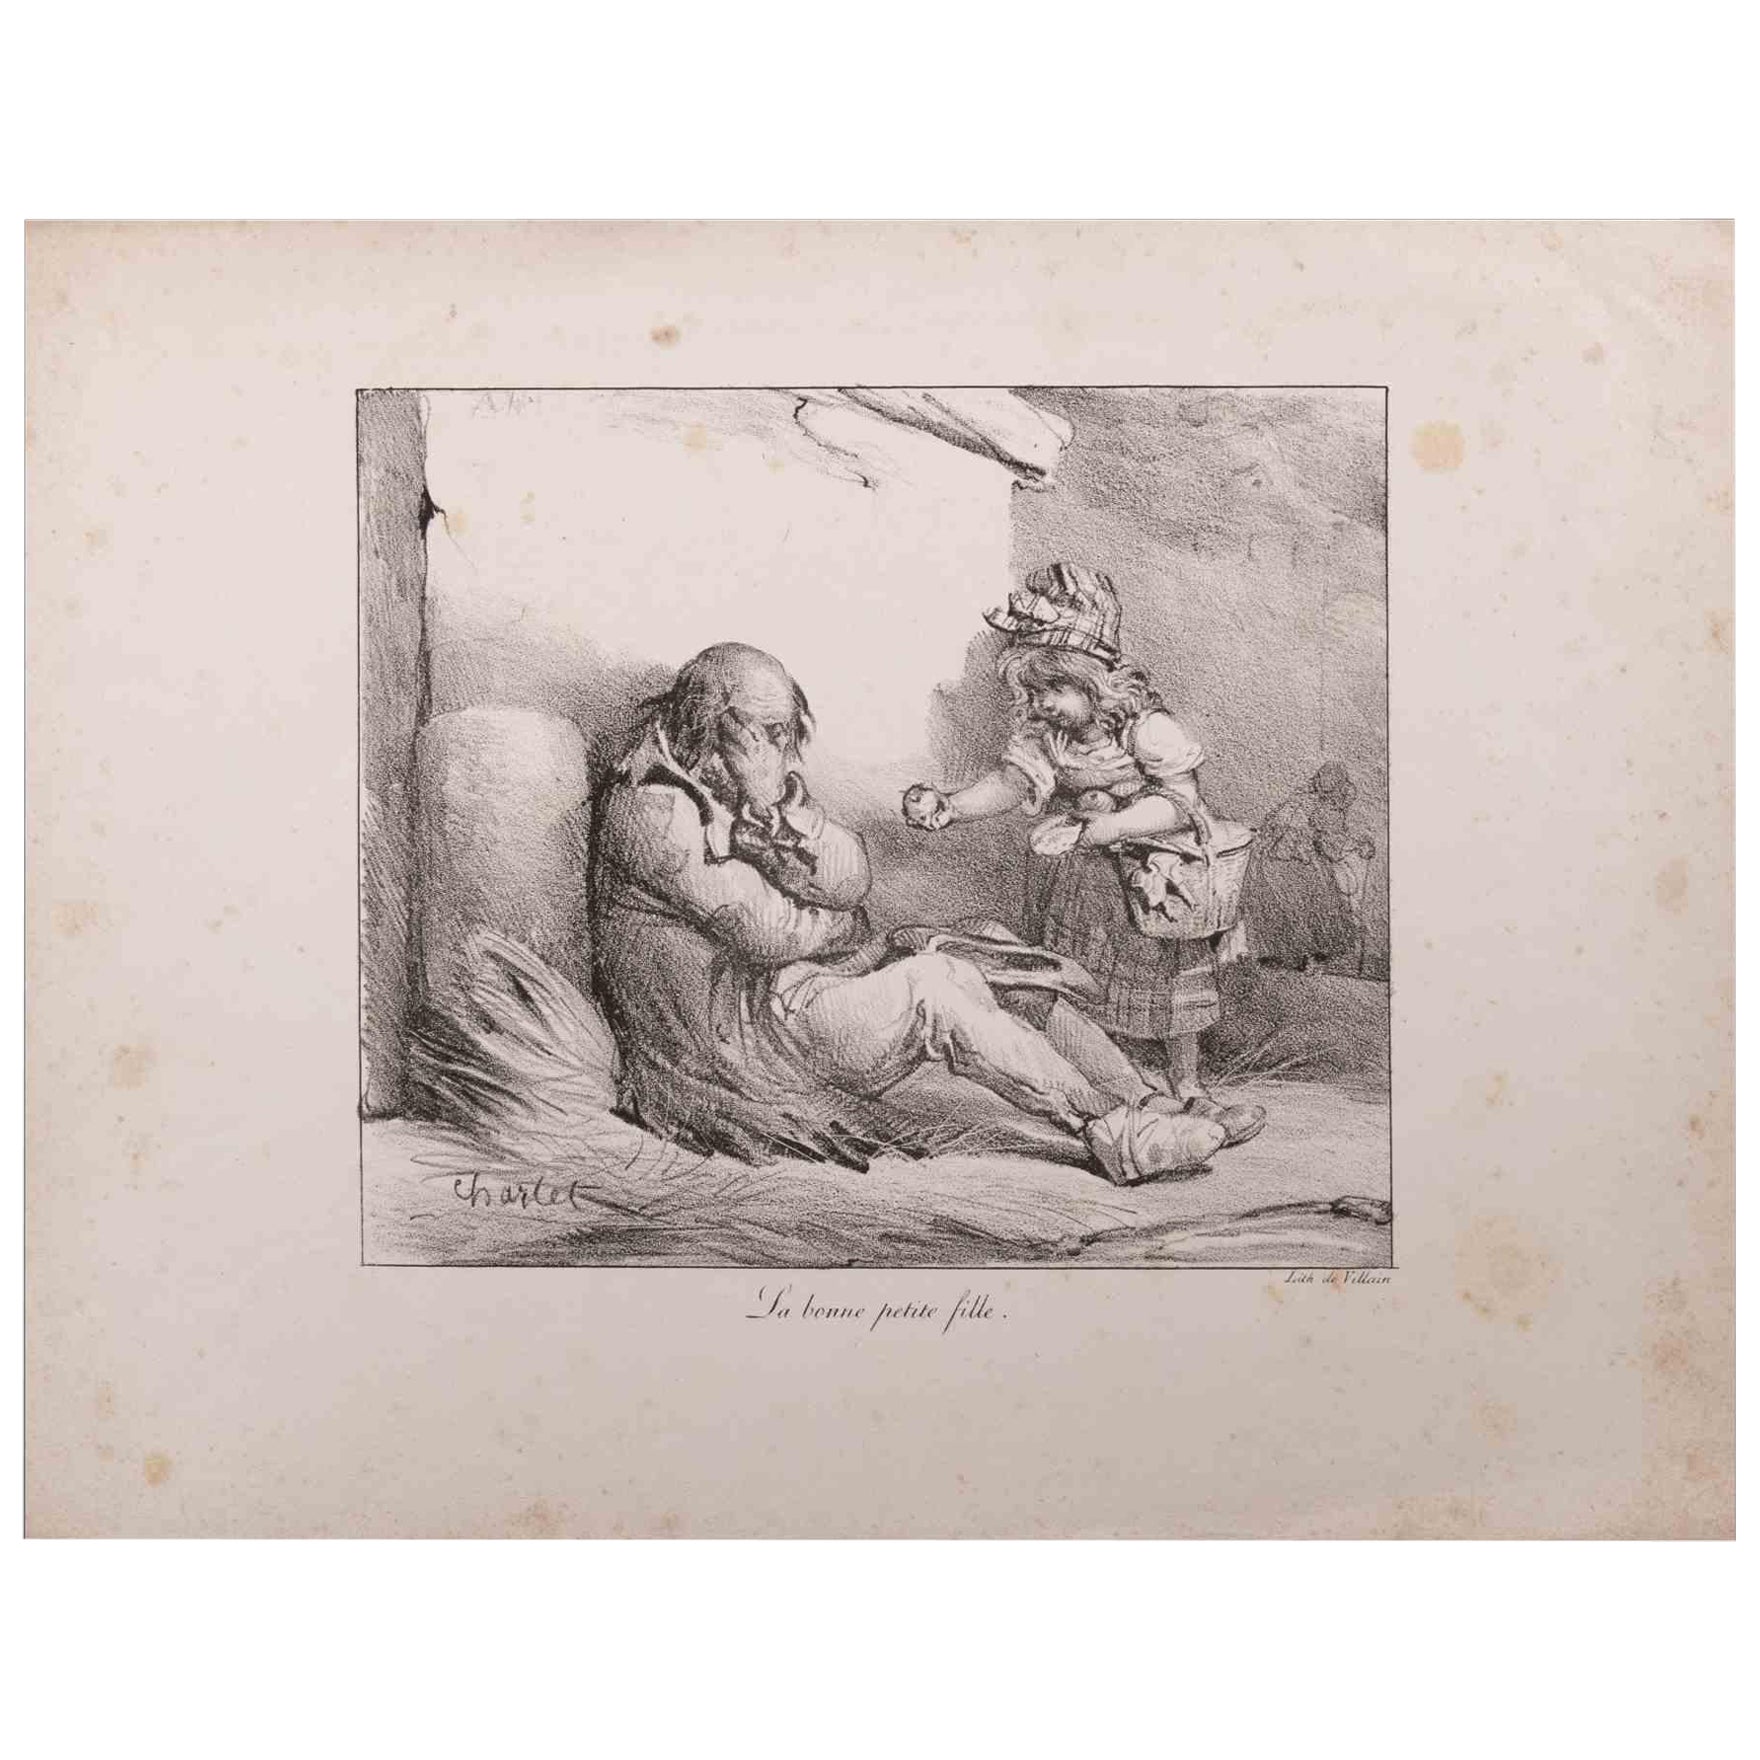 La Bonne petite fille est une lithographie originale réalisée par Nicolas Toussaint Charlet (1792-1845).

Signé sur la plaque. Titré sur le bas.

Bon état avec quelques rousseurs et petites coupures.

Nicolas Toussaint Charlet (20 décembre 1792 - 30